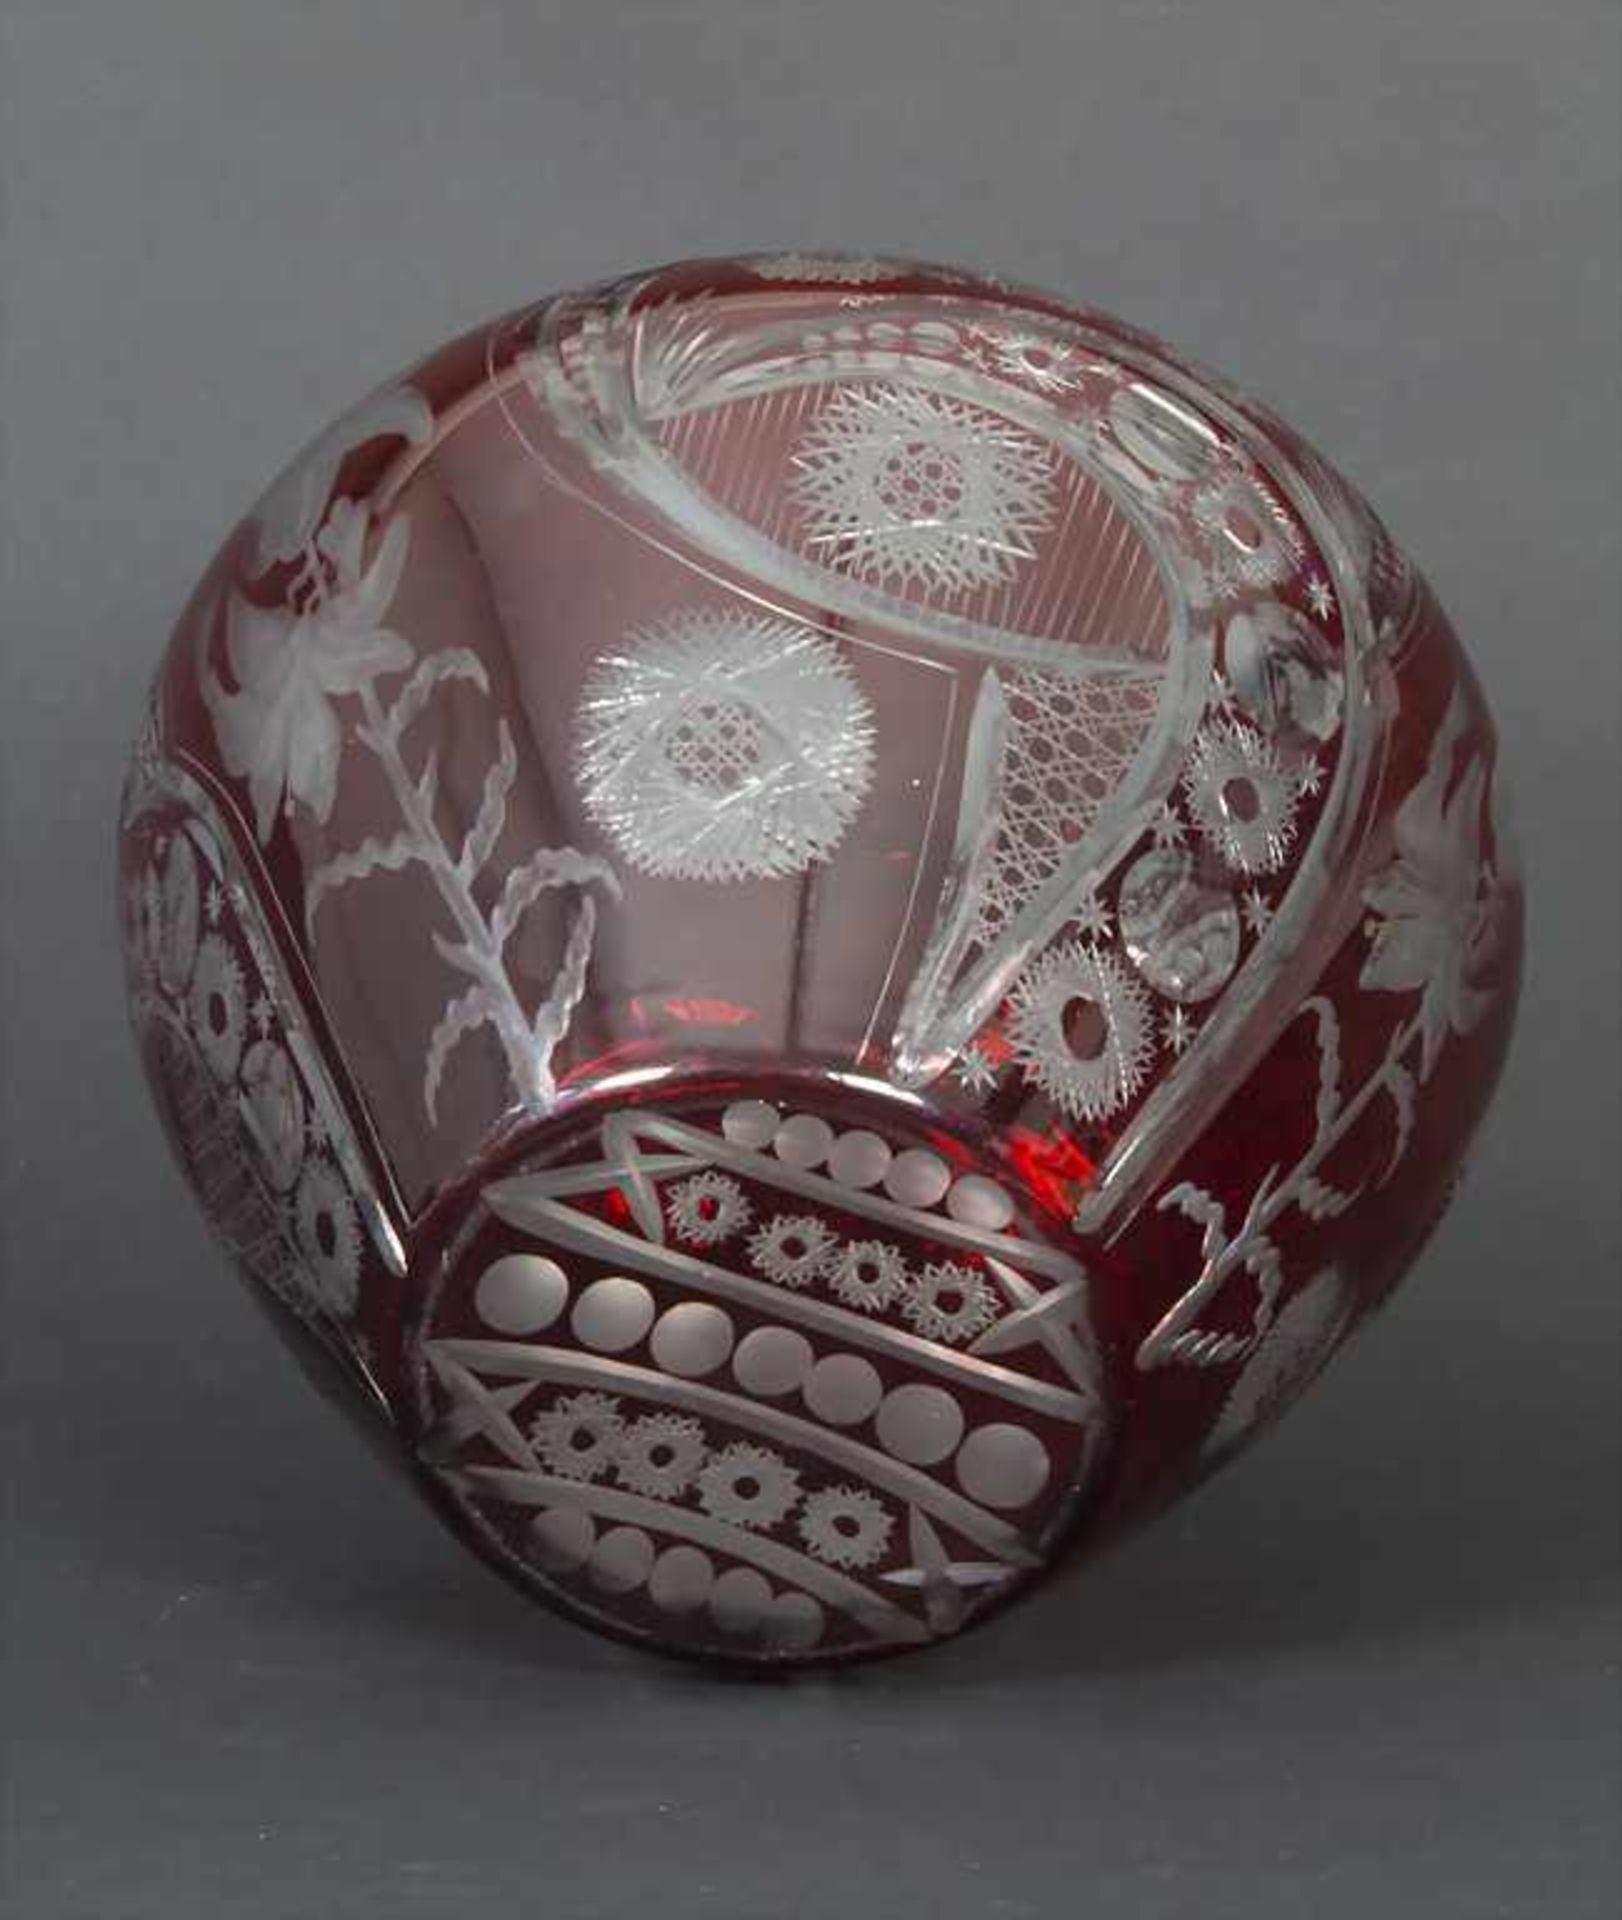 Blumenvase / A flower vase, Böhmen, 20. Jh.Material: Rubinglas, sehr fein geschnitten,Höhe: 26 cm, - Bild 4 aus 5